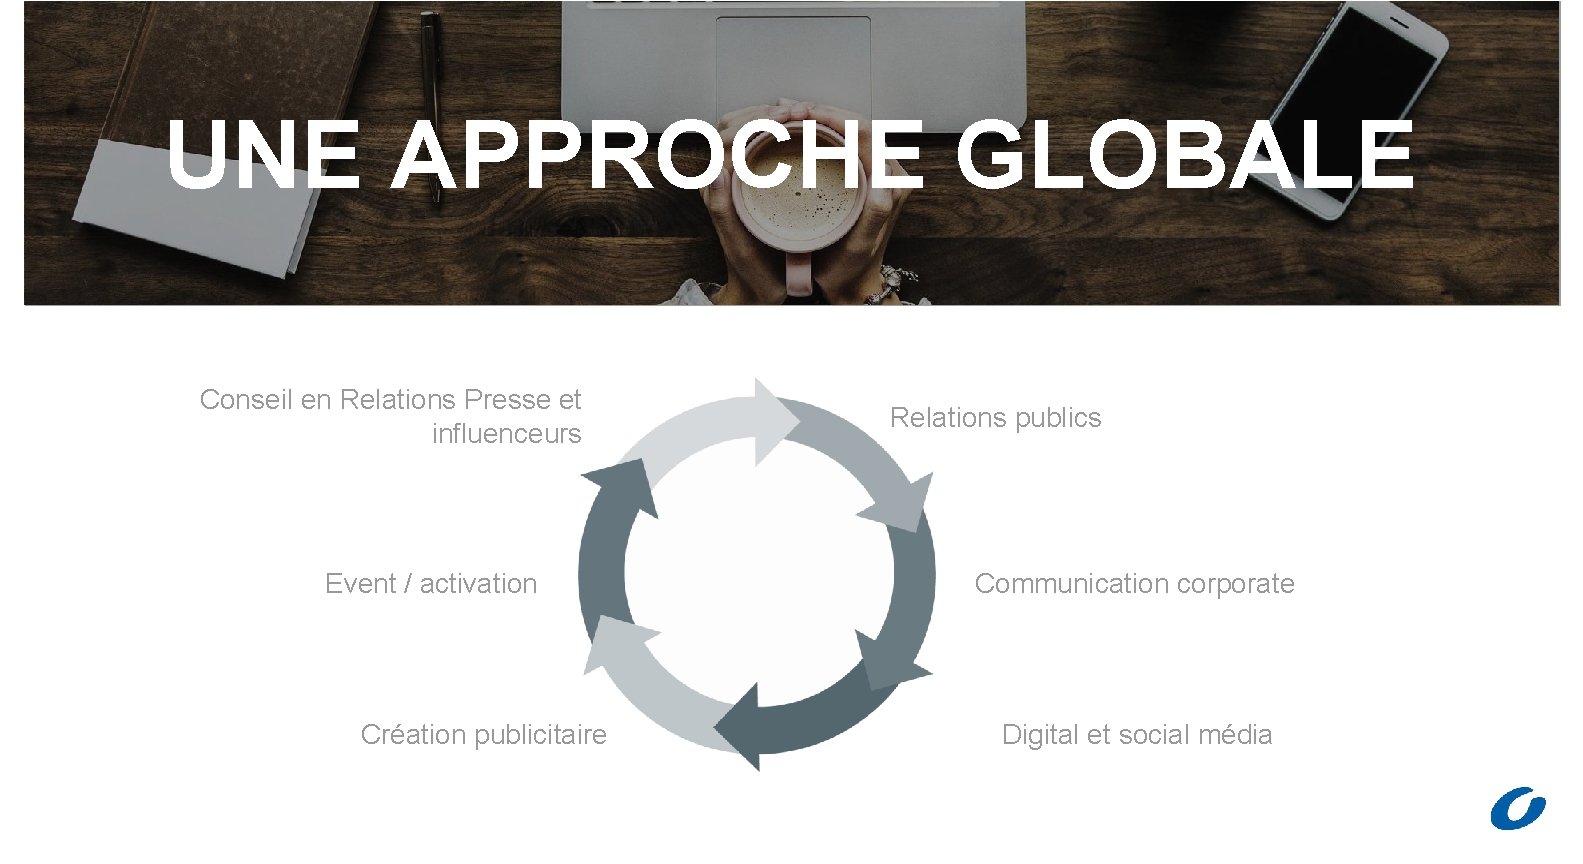 UNE APPROCHE GLOBALE Conseil en Relations Presse et influenceurs Event / activation Création publicitaire